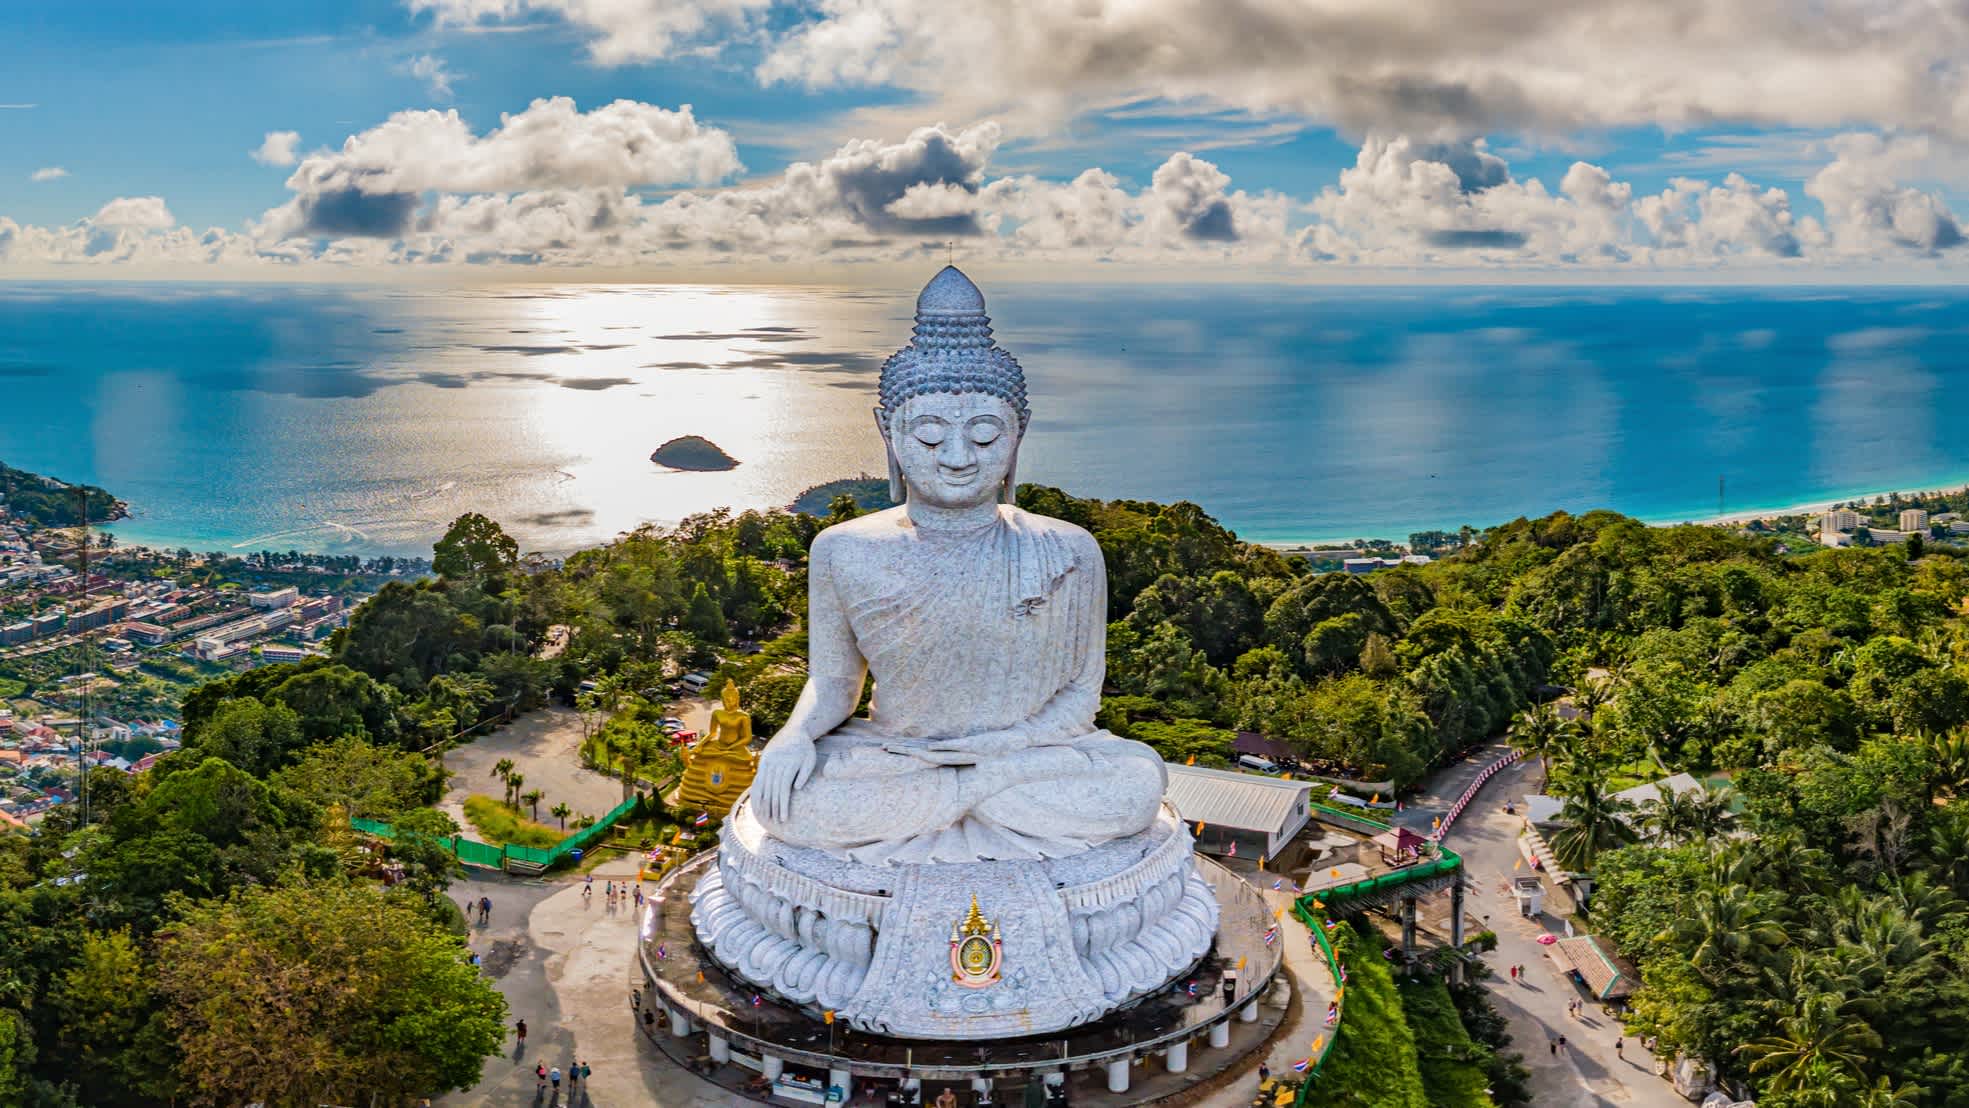 Vue aérienne du grand Bouddha à Phuket, Thaïlande

